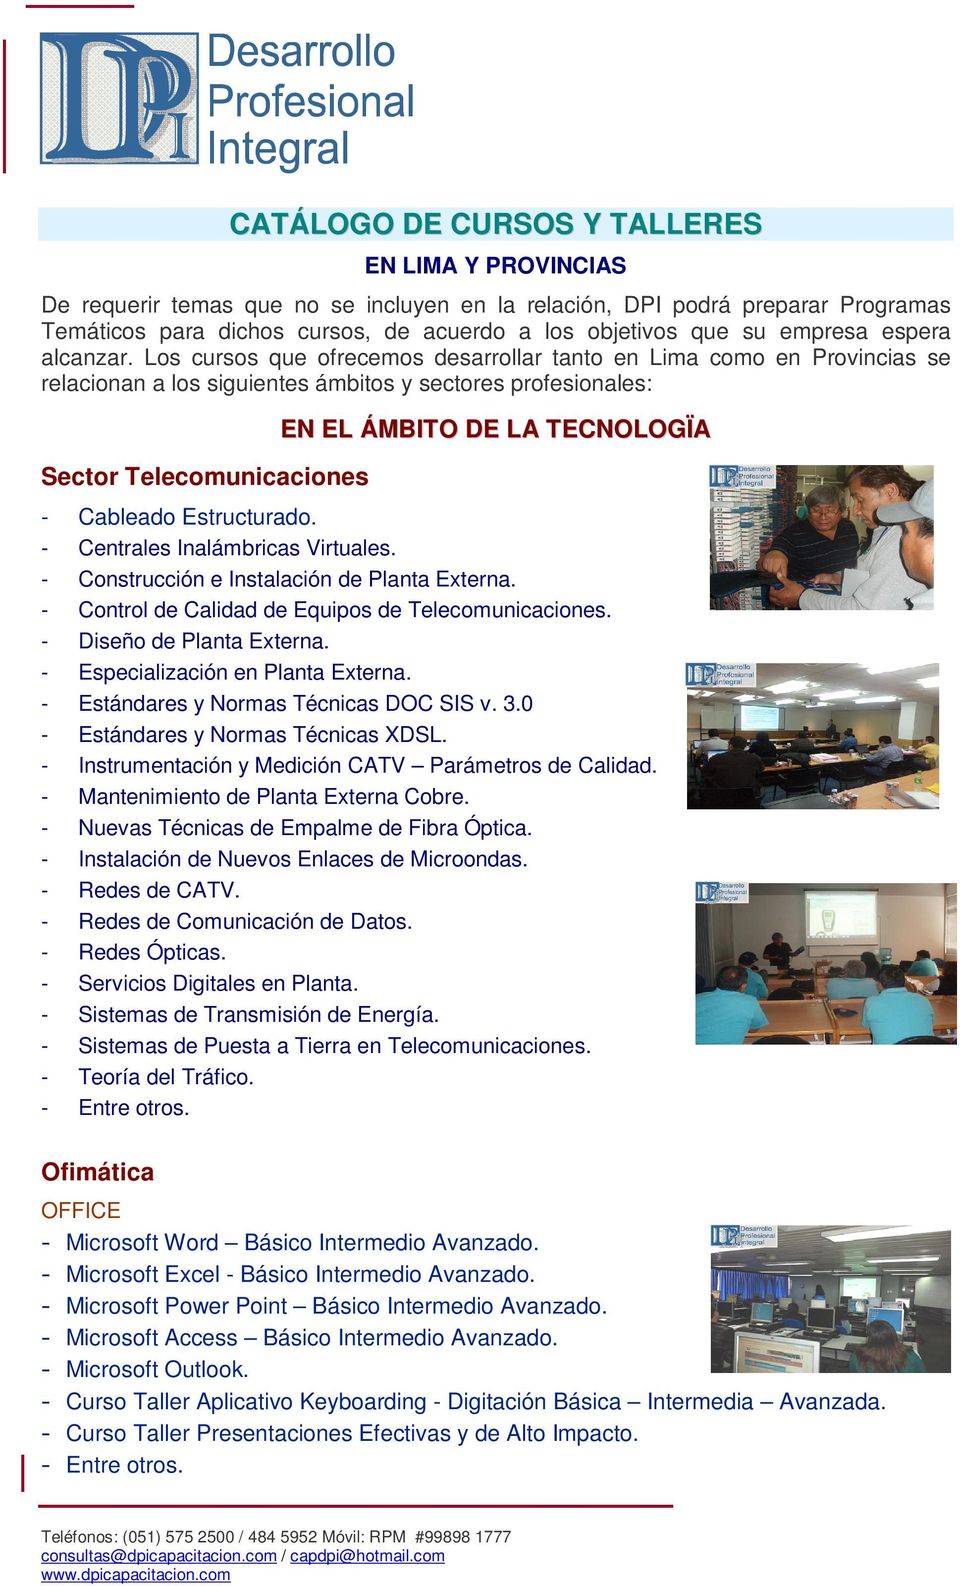 Los cursos que ofrecemos desarrollar tanto en Lima como en Provincias se relacionan a los siguientes ámbitos y sectores profesionales: Sector Telecomunicaciones EN EL ÁMBITO DE LA TECNOLOGÏA -